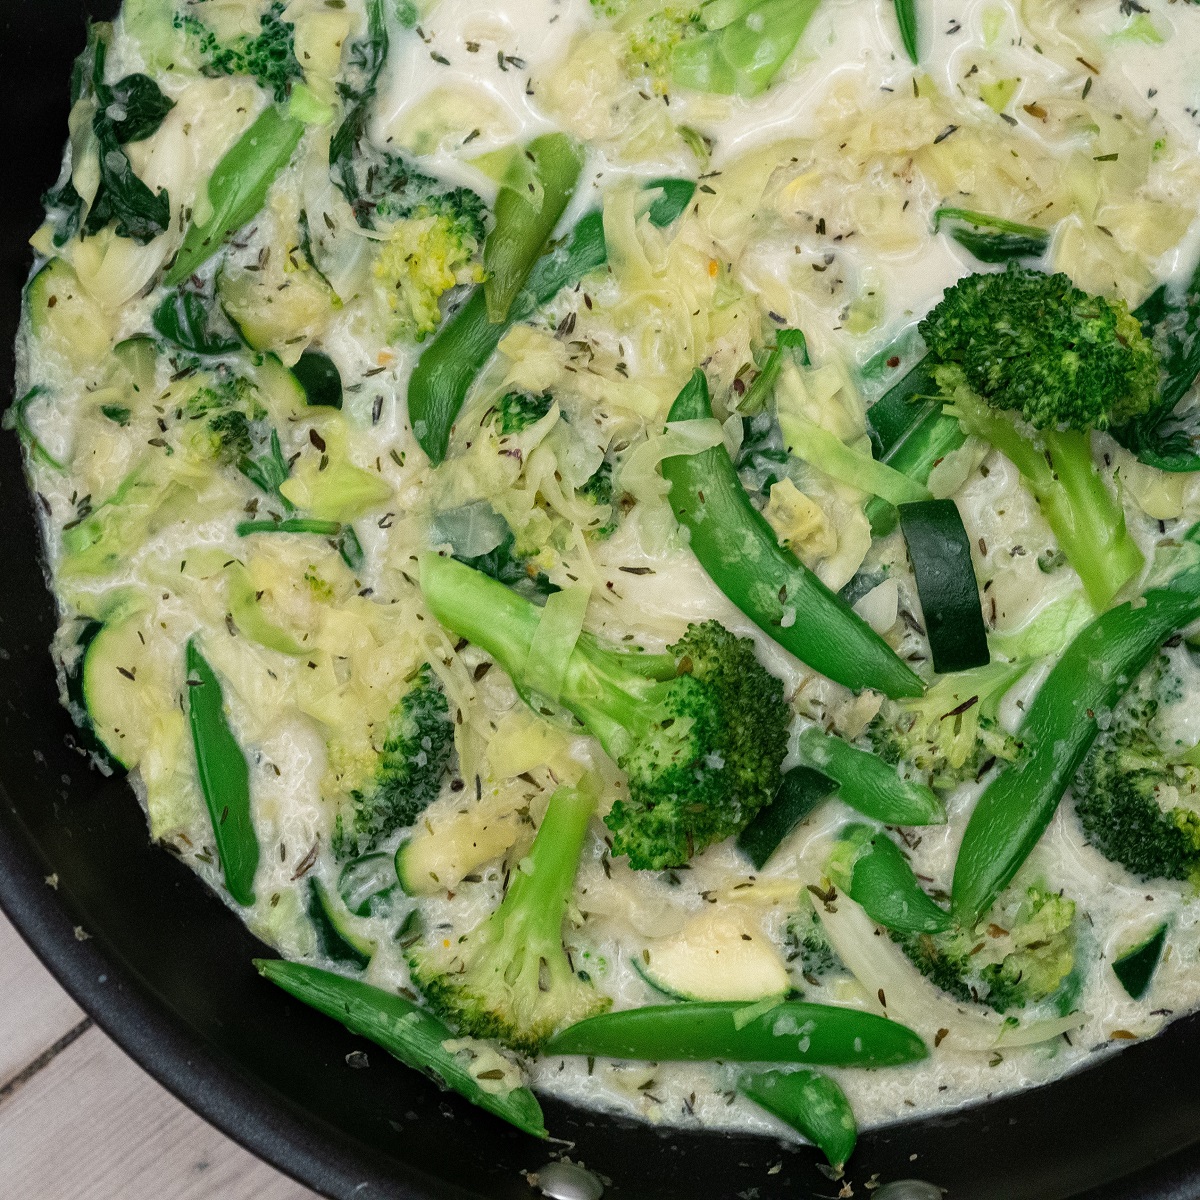 Recipe for Nordic One-pot Creamy Broccoli Spinach